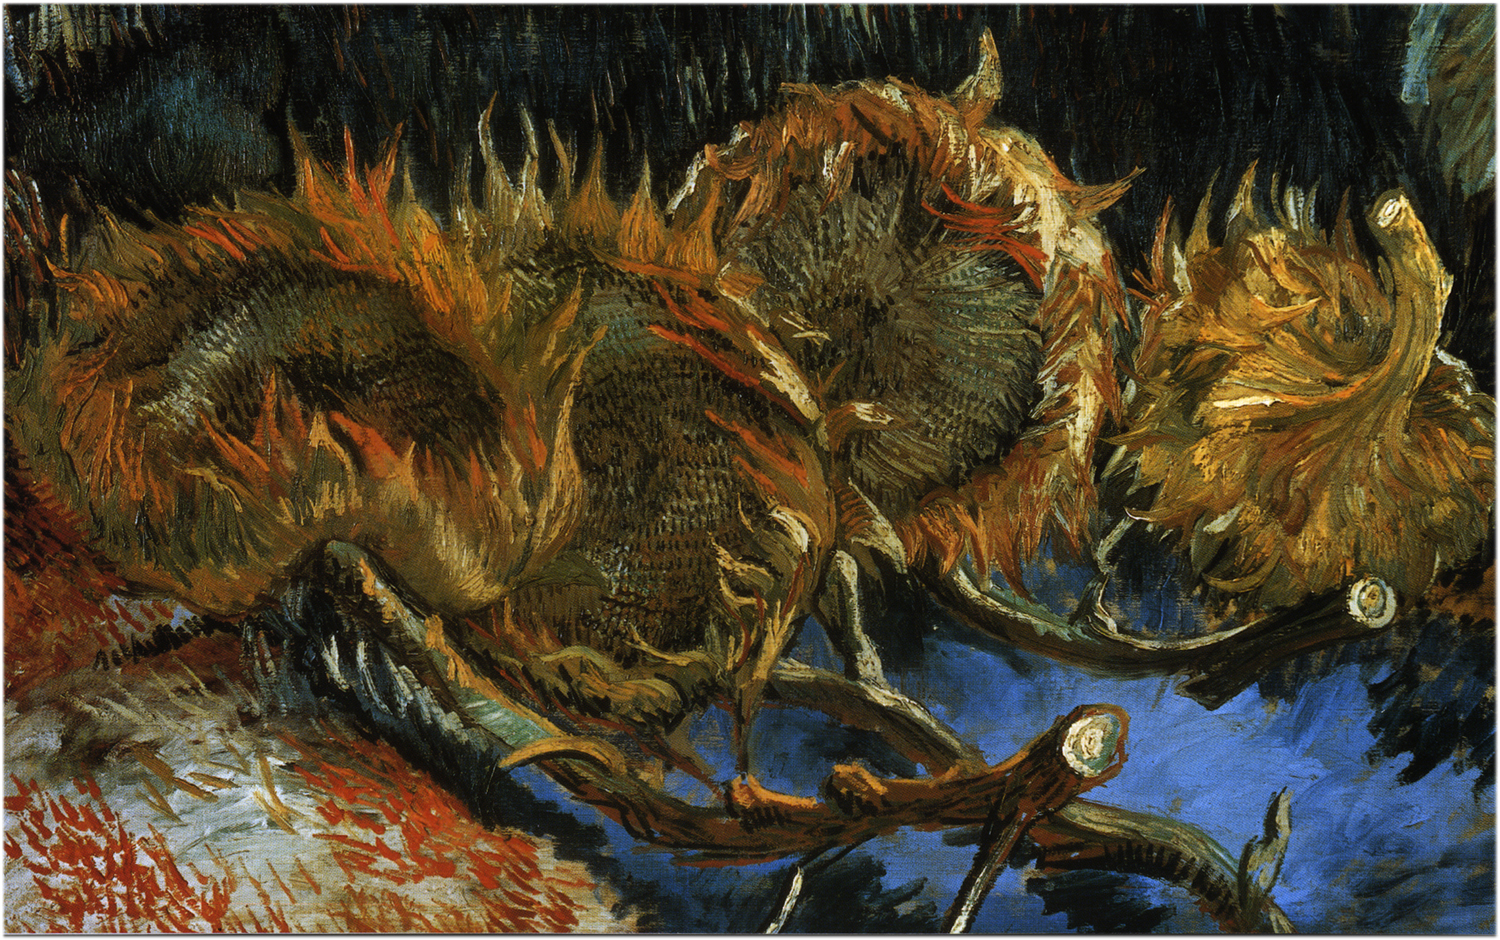 Four Cut Sunflowers - Van Gogh Painting On Canvas